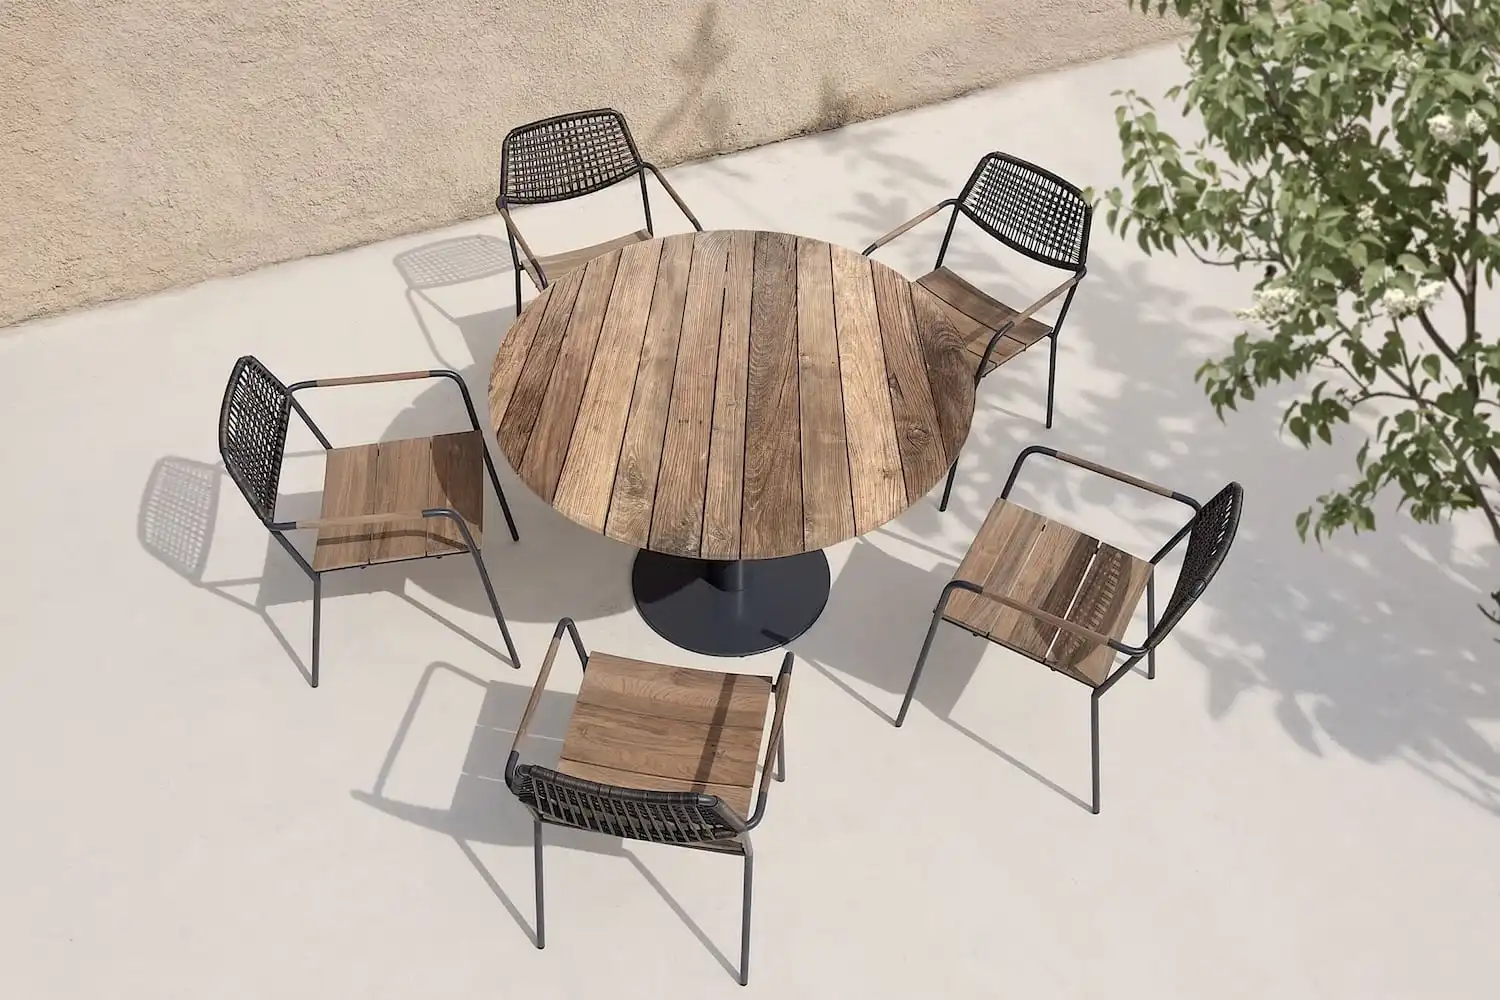 Une table ronde en bois rustique entourée de quatre chaises.